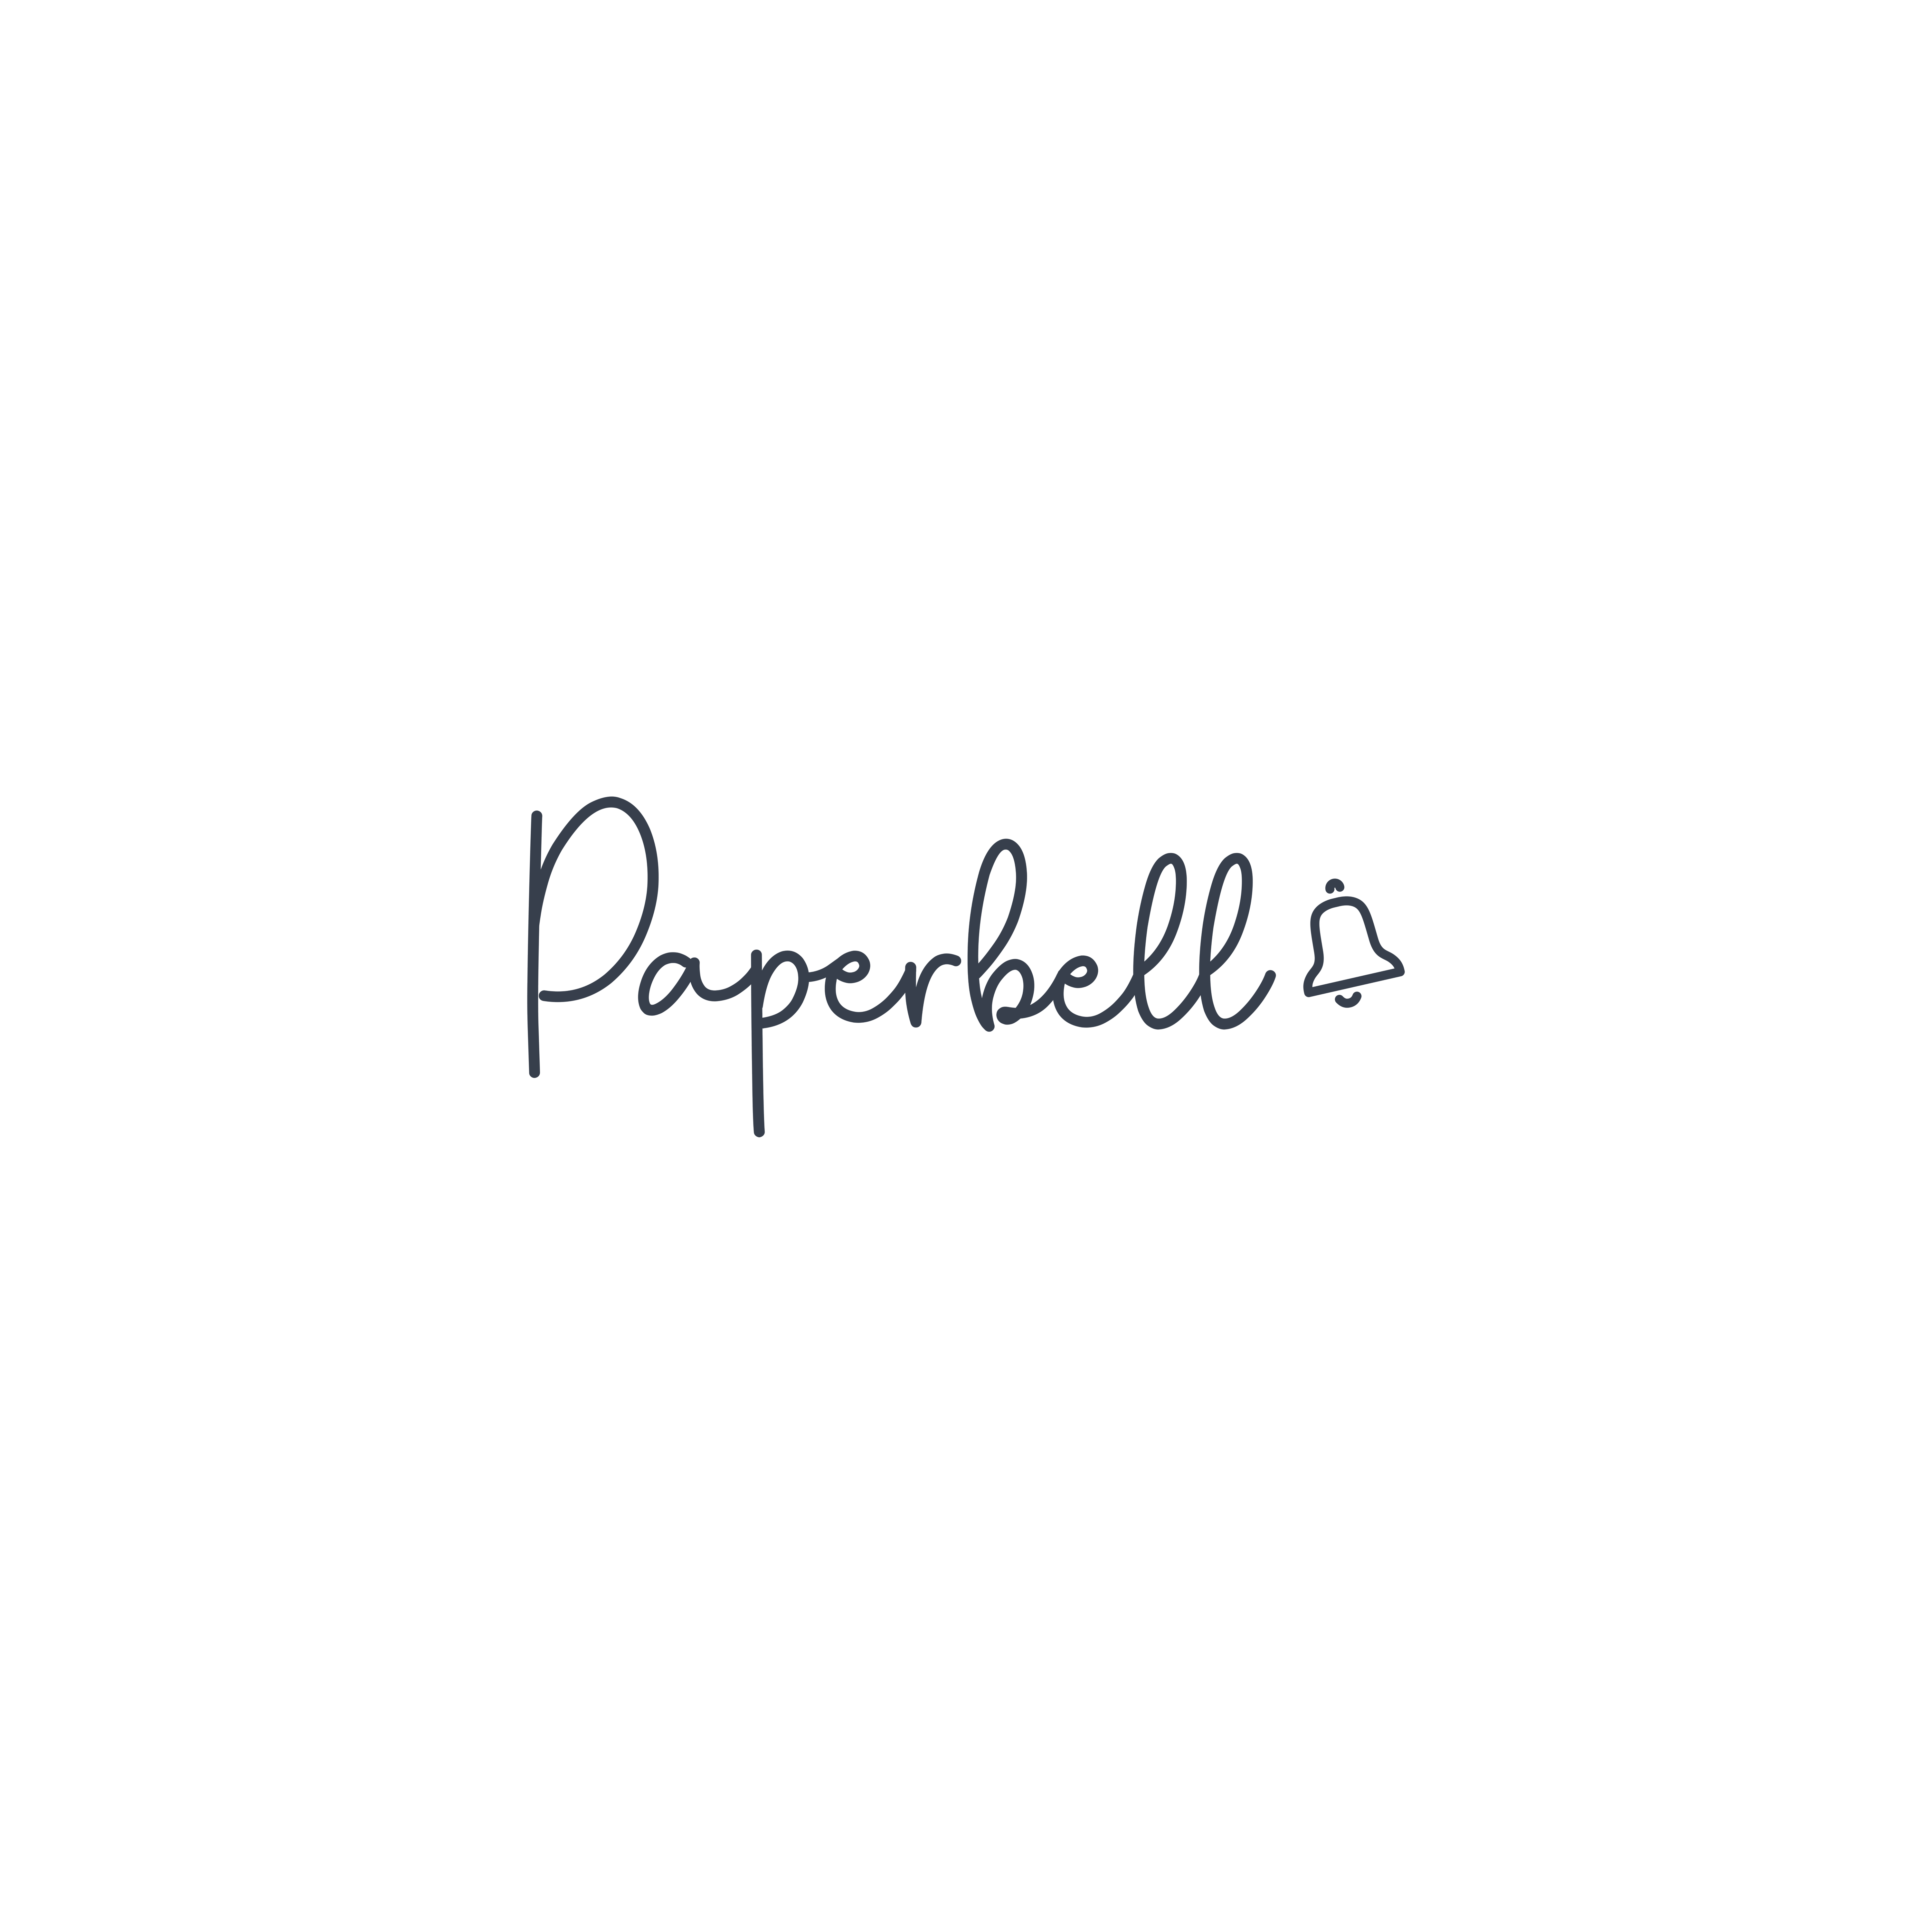 Paperbell logo